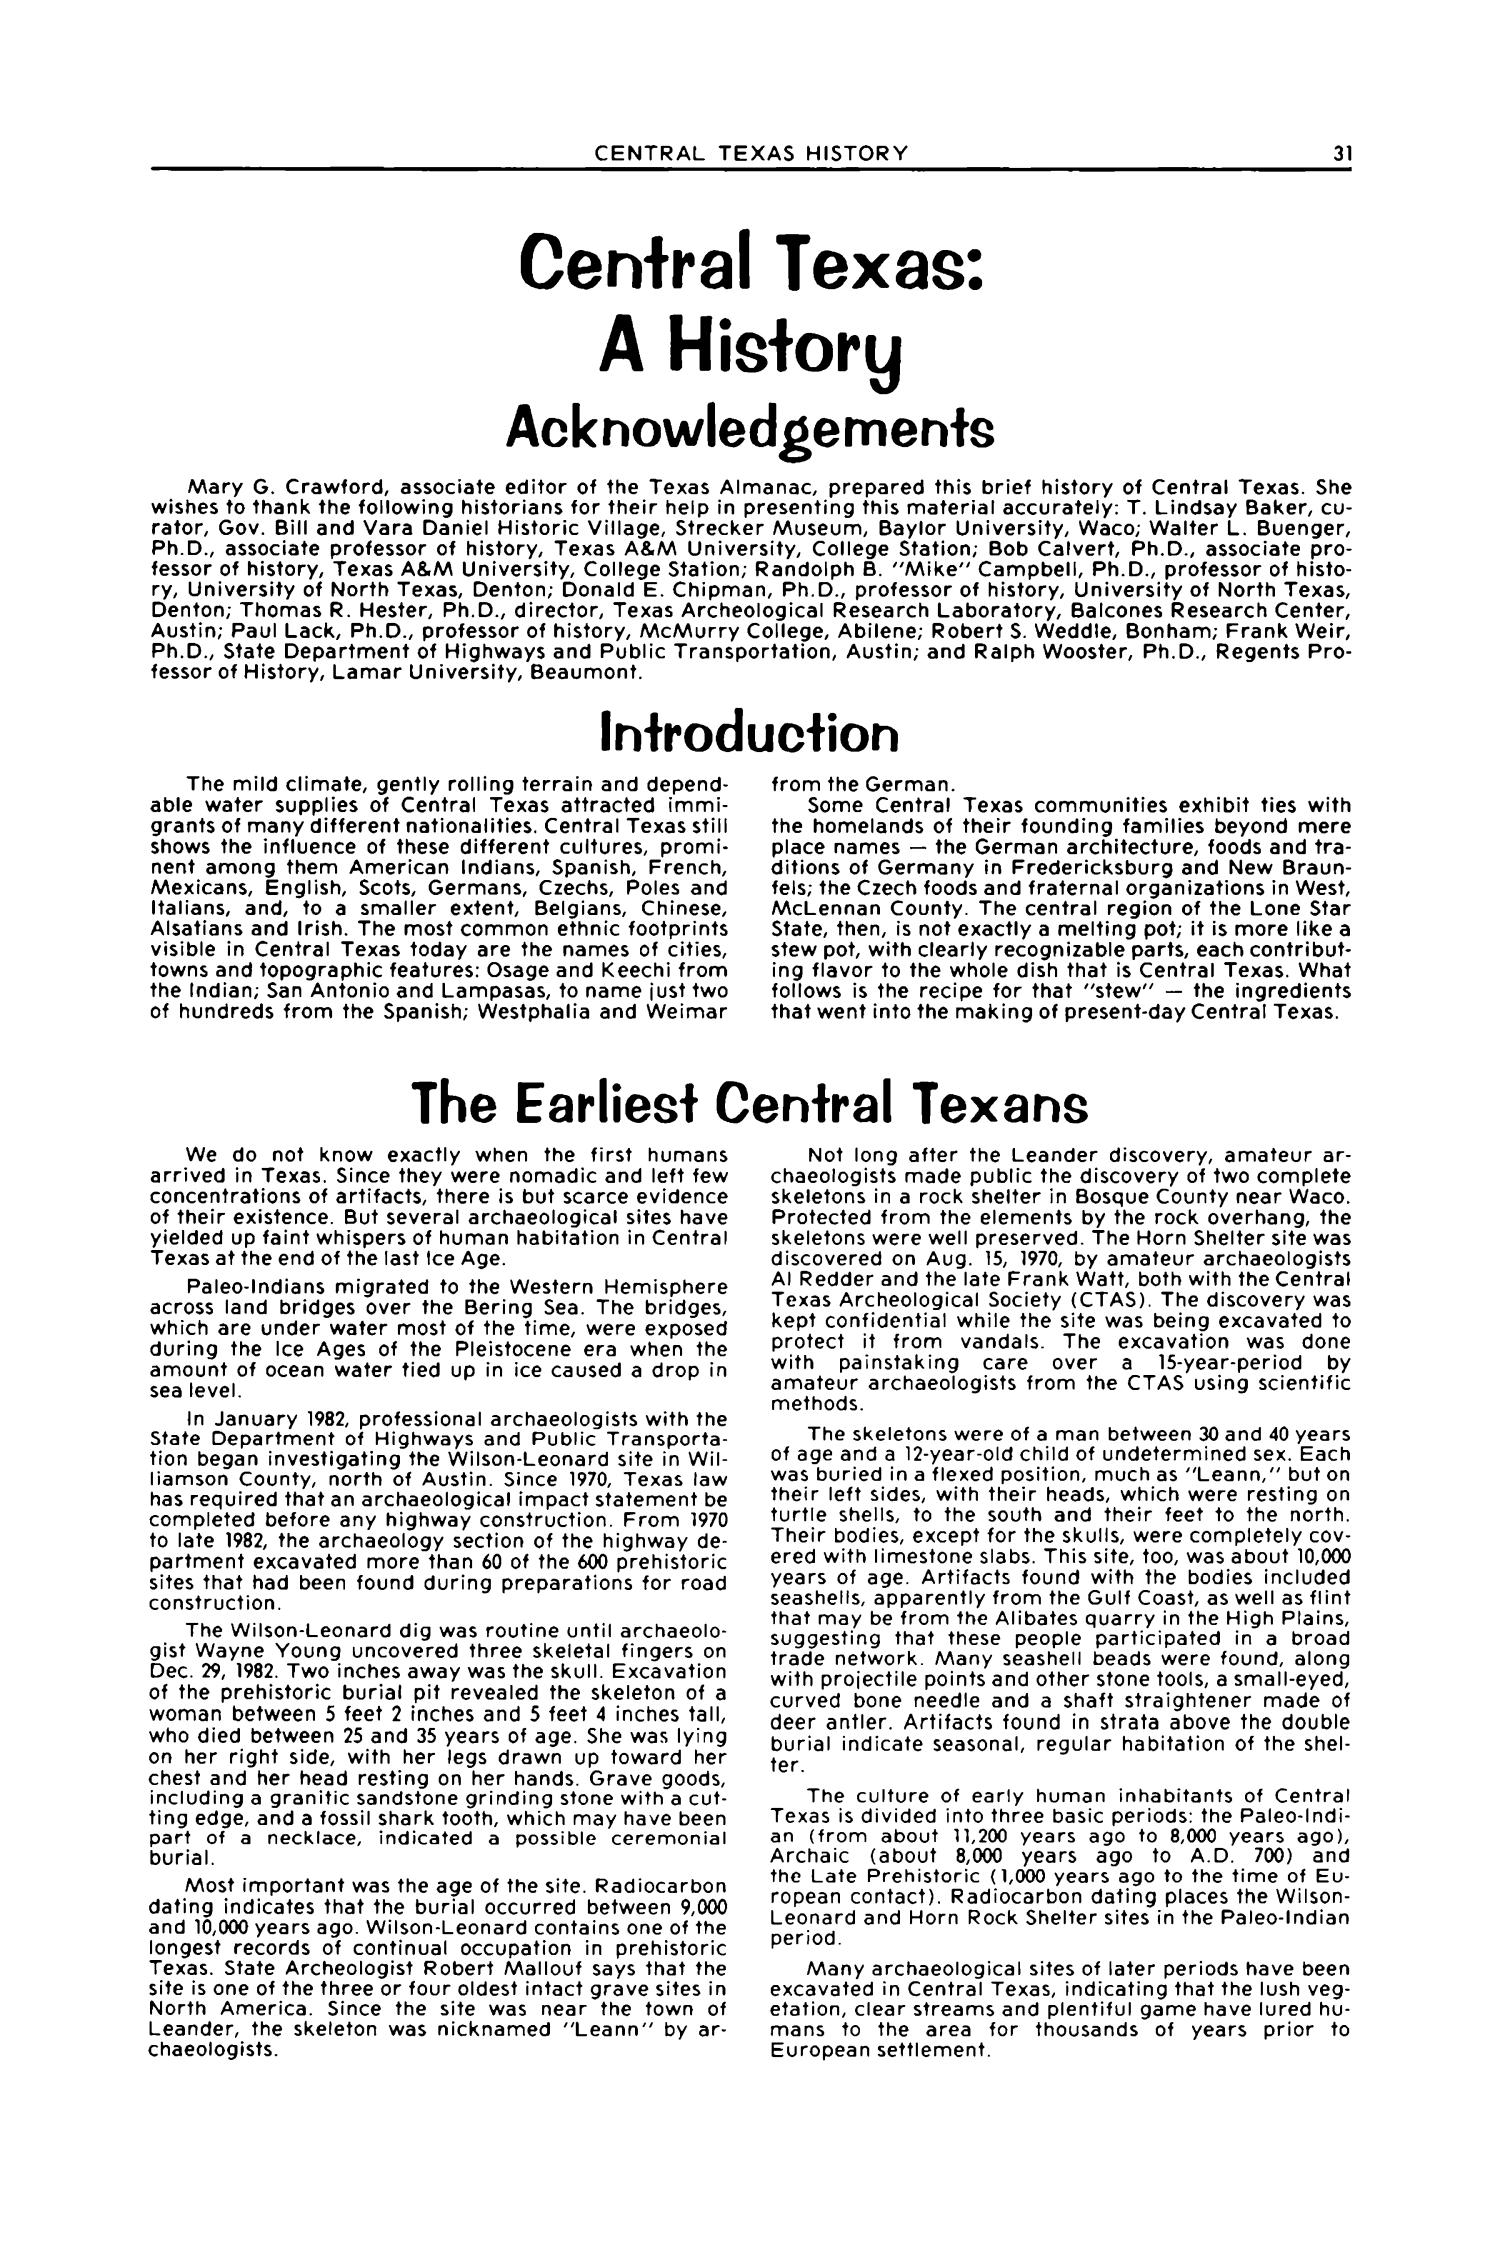 Texas Almanac, 1992-1993
                                                
                                                    31
                                                